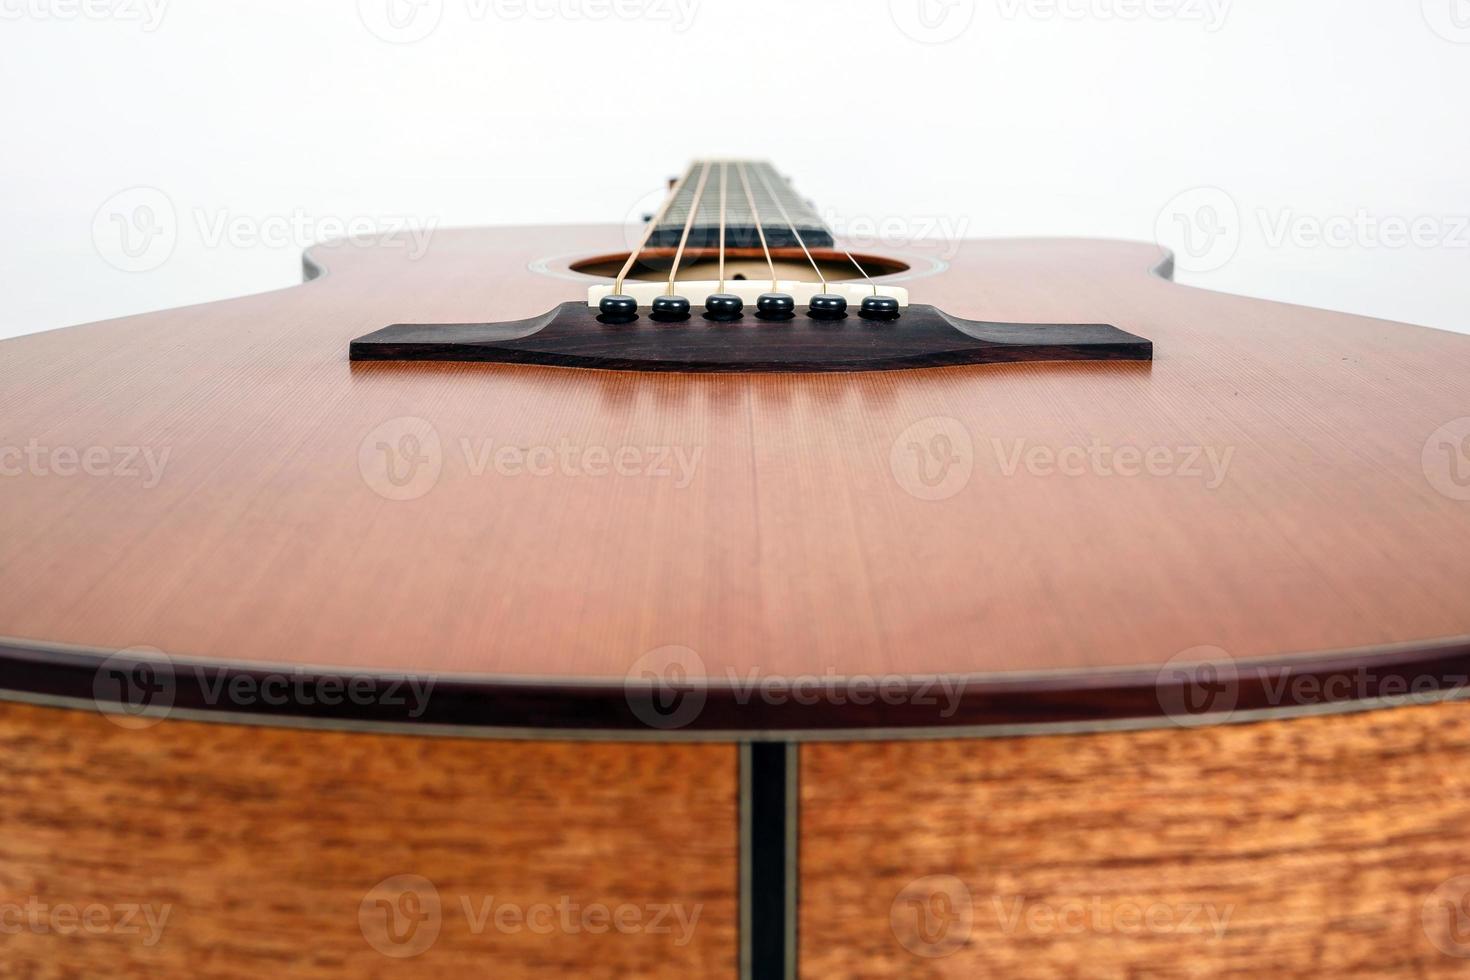 texture bois du pont inférieur de la guitare acoustique à six cordes sur fond blanc. forme de guitare photo